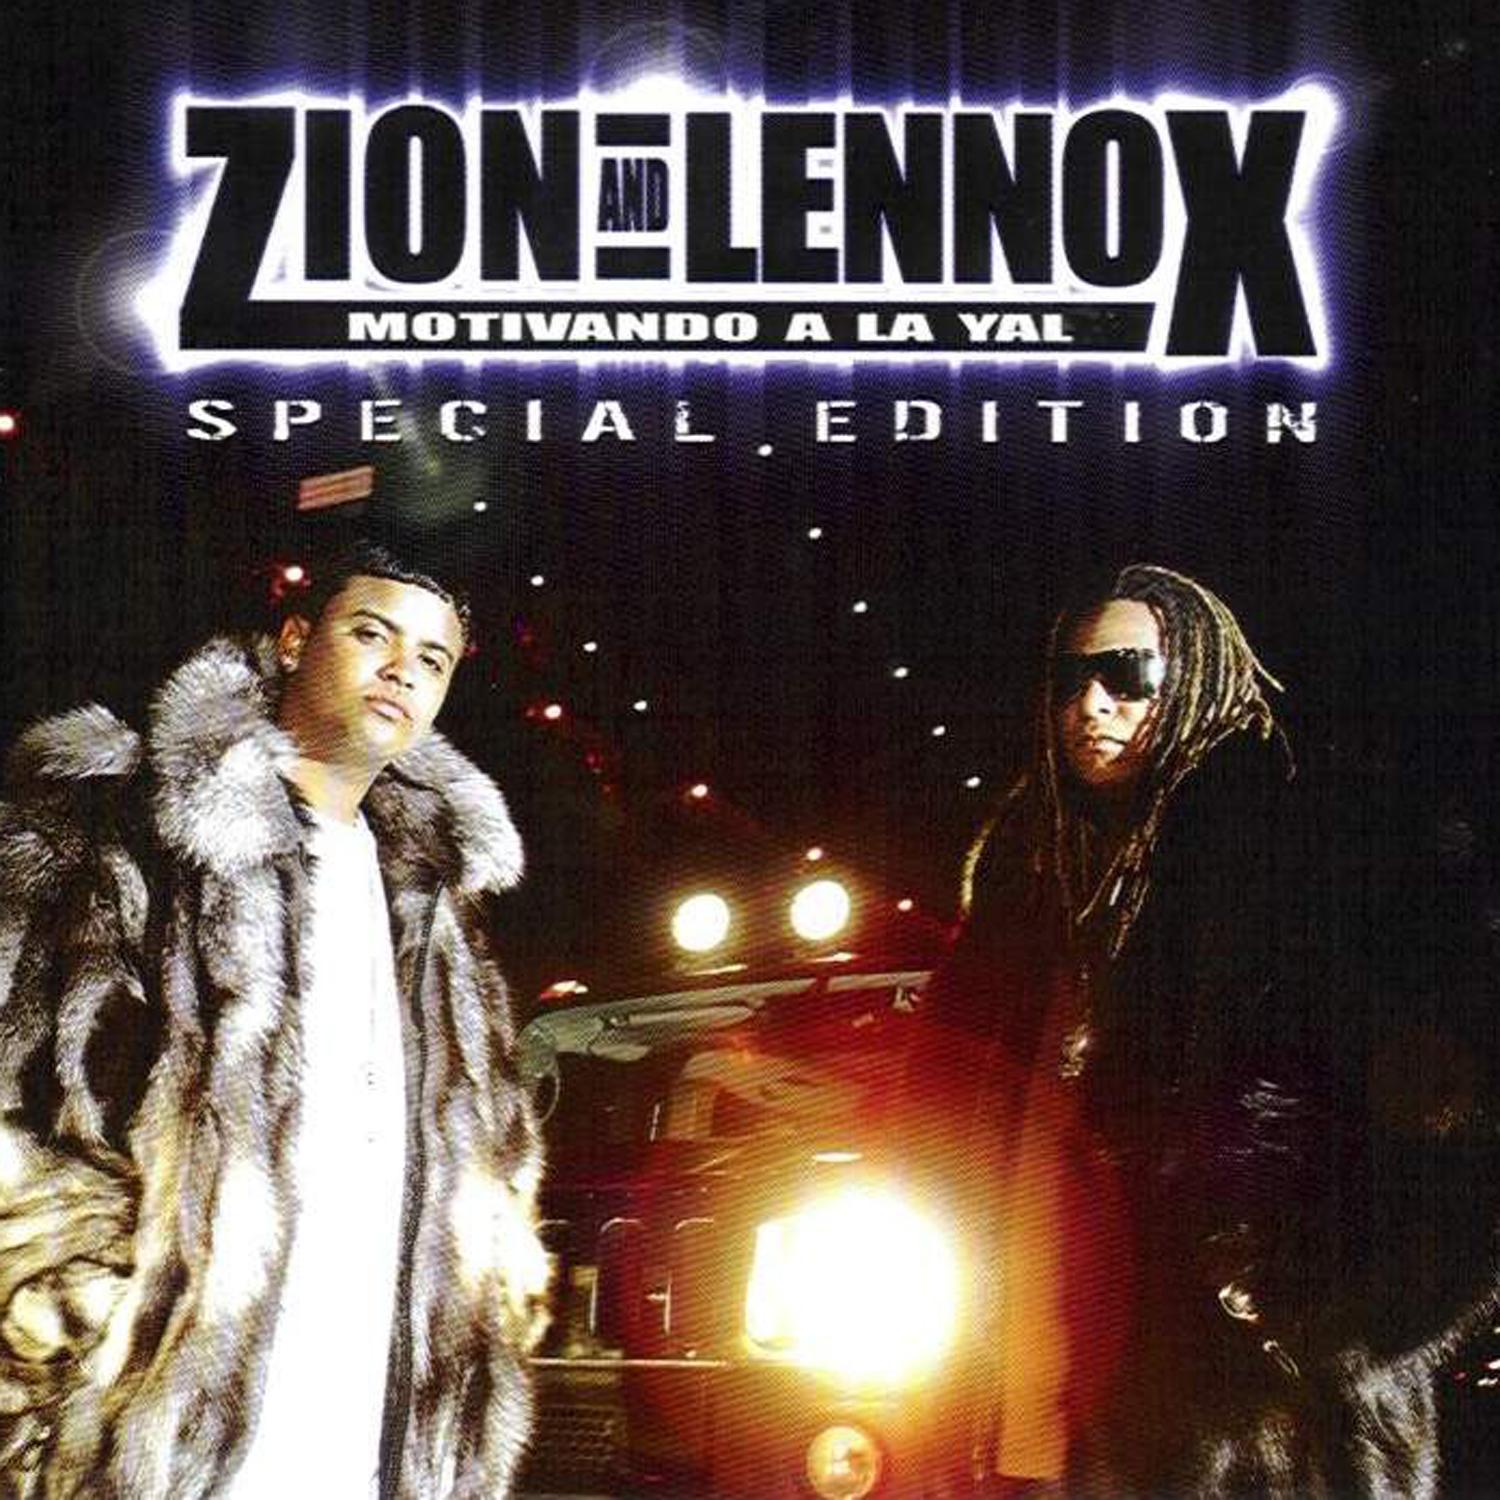 Yo voy daddy. Zion y Lennox. Lennox feat. Motivando a la Yal Zion y Lennox. Zion y Lennox песни.